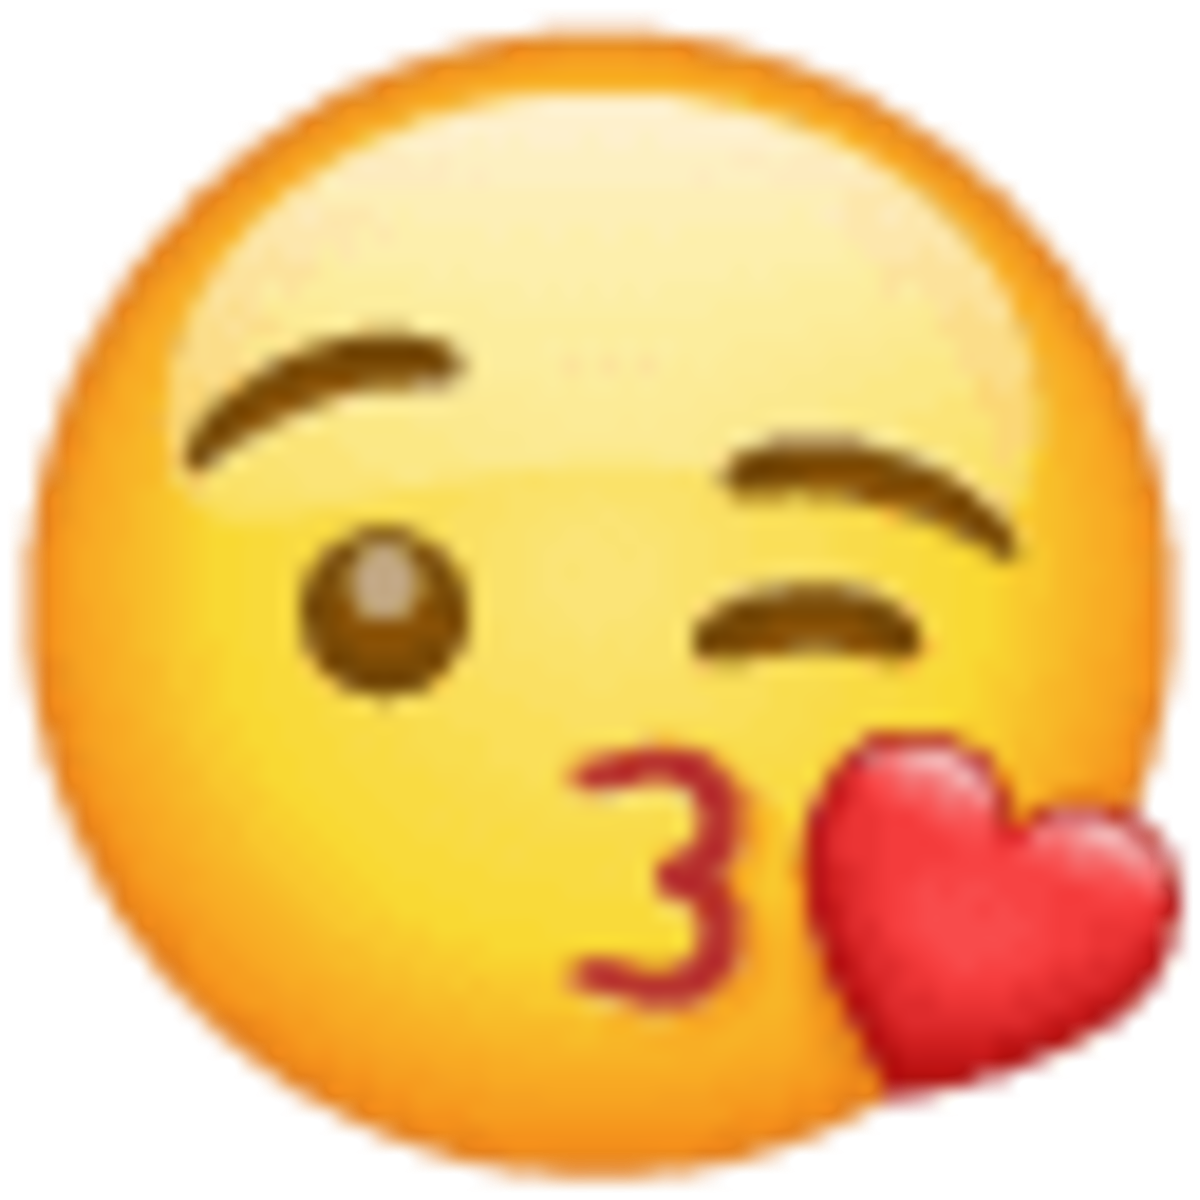 Emoji 1f618, cara lanzando un beso